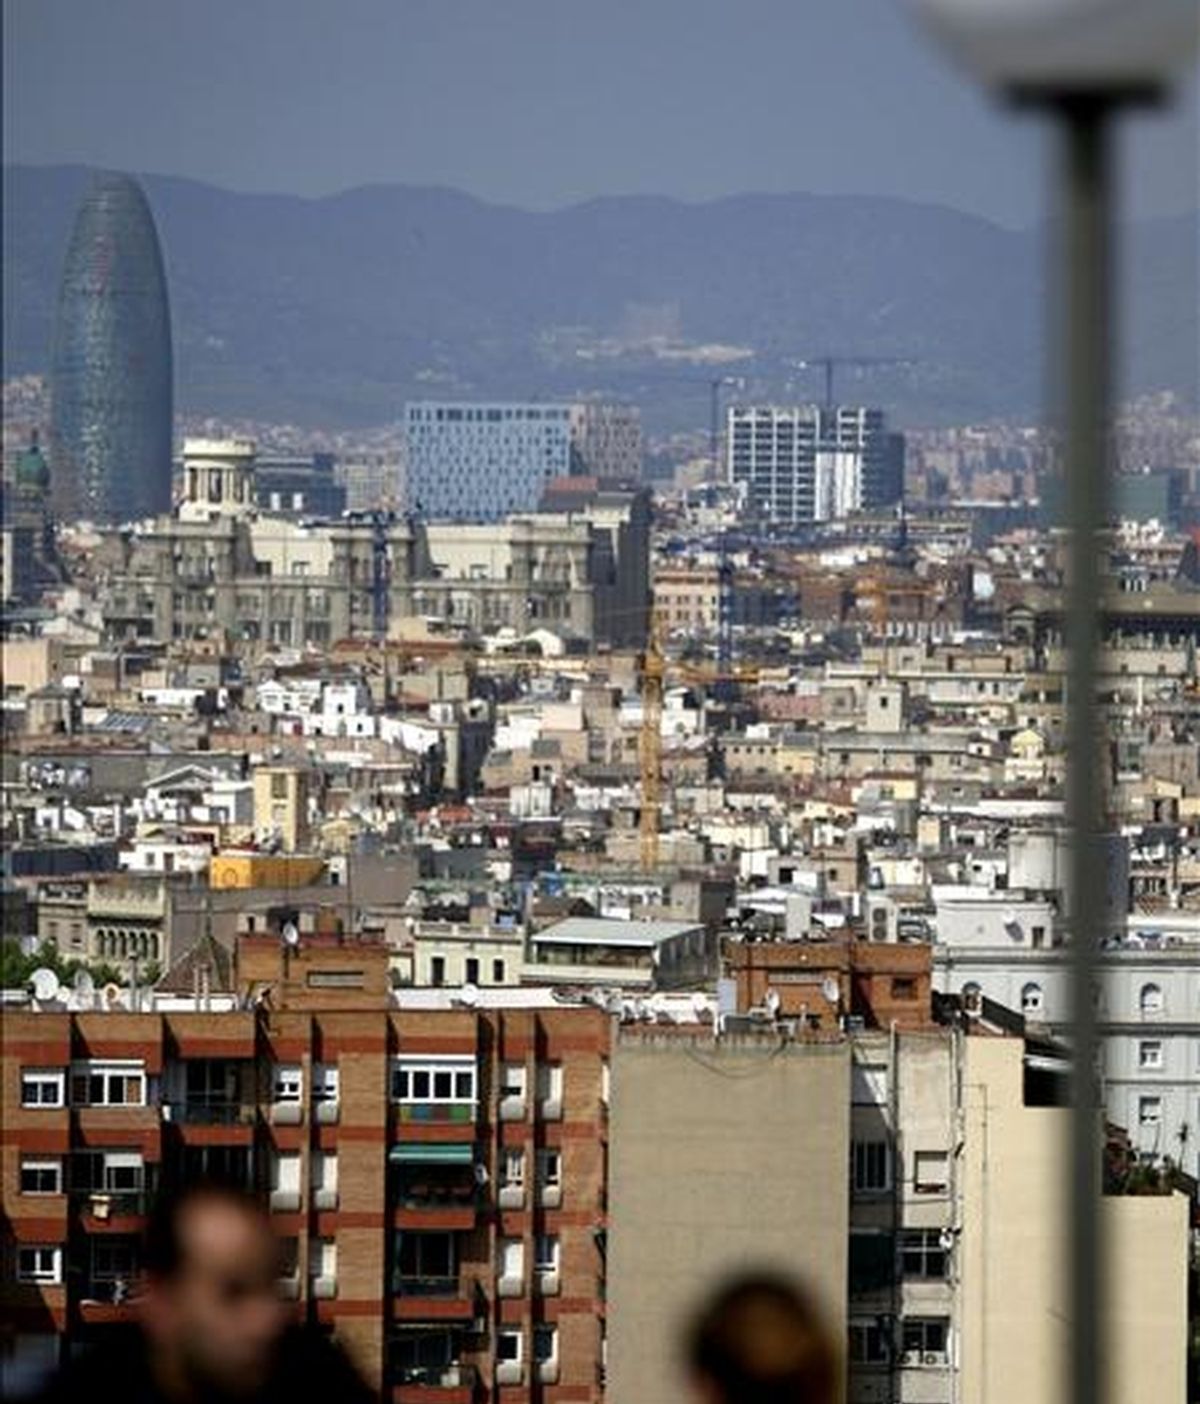 Vista panorámica de la ciudad de Barcelona con la Torre Agbar. EFE/Archivo